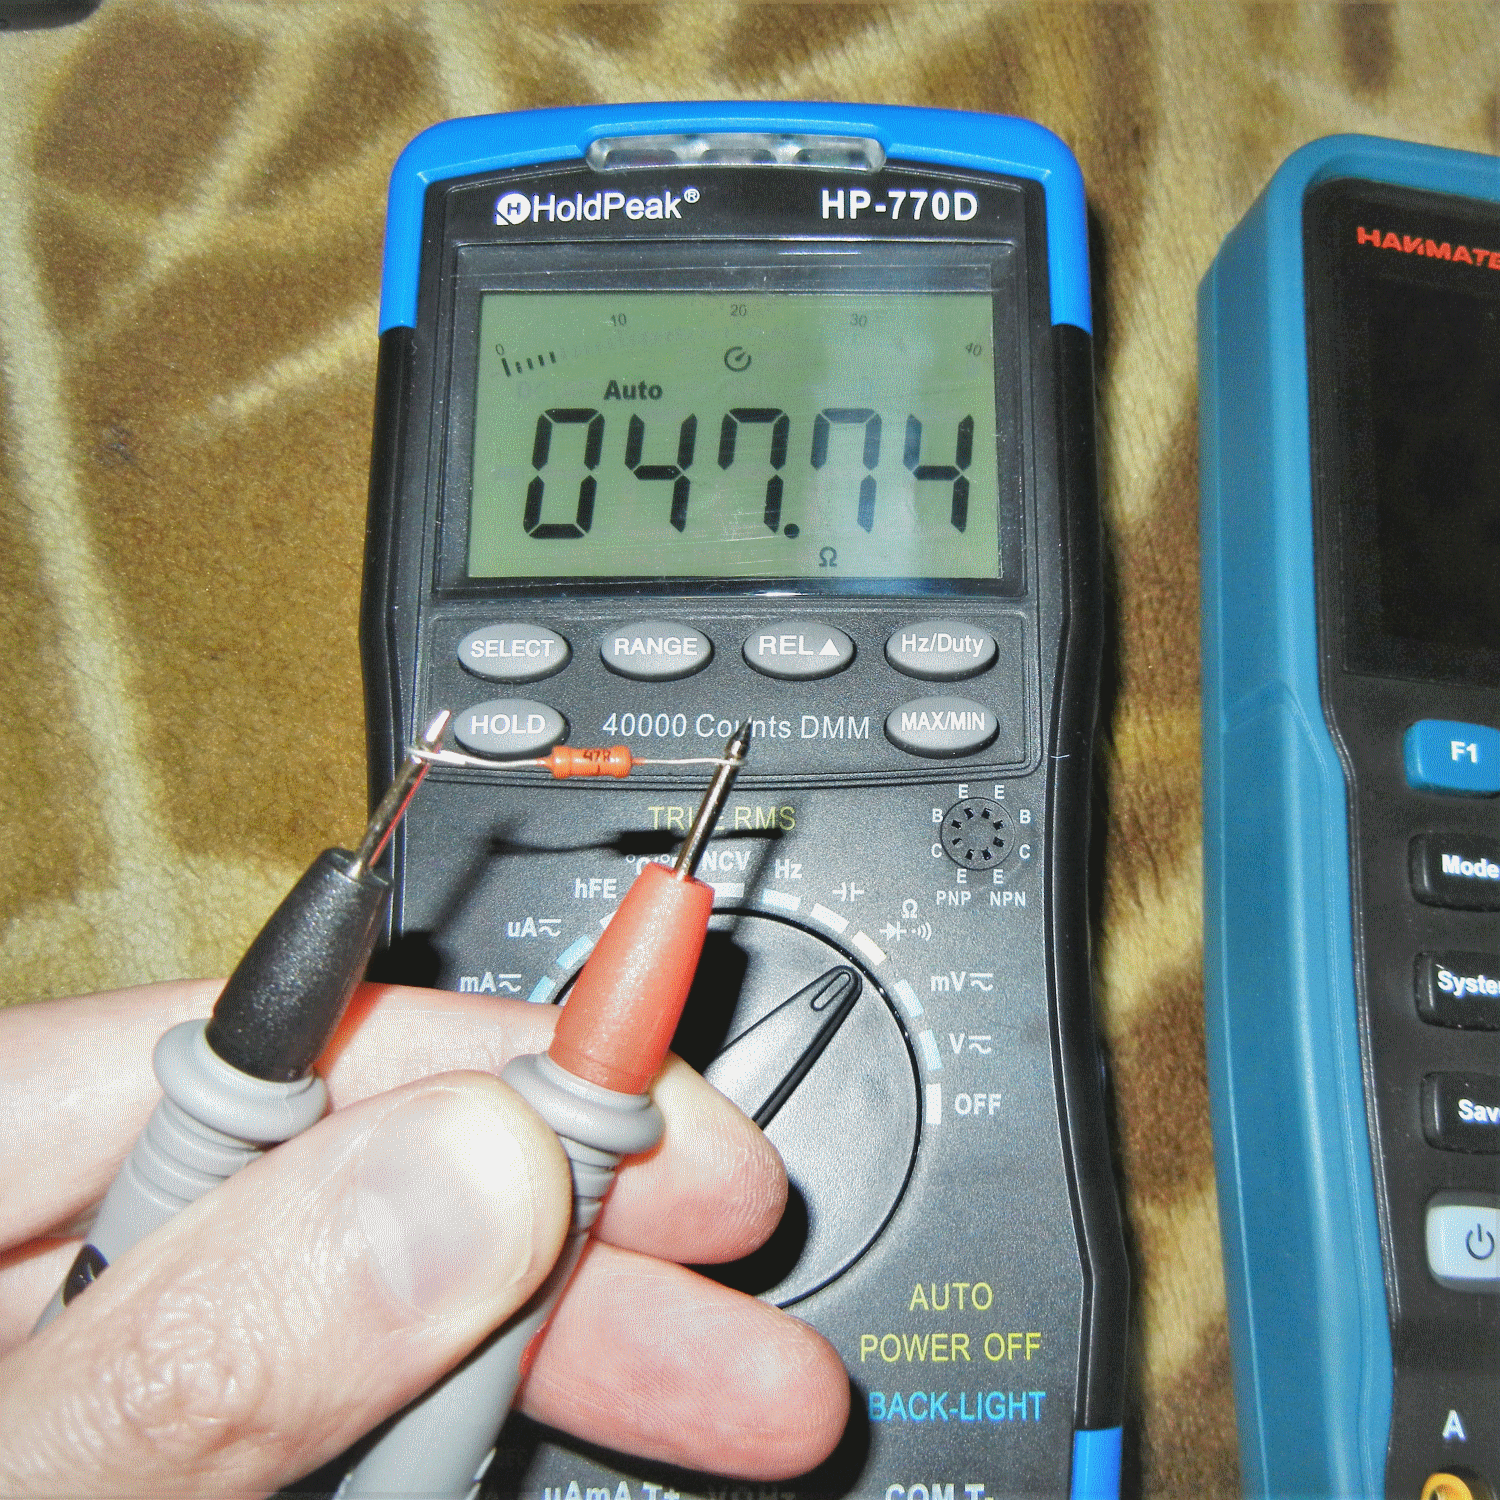 Двухканальный осциллограф HANMATEK HO-05 с мультиметром 20К и генератором (опционально)